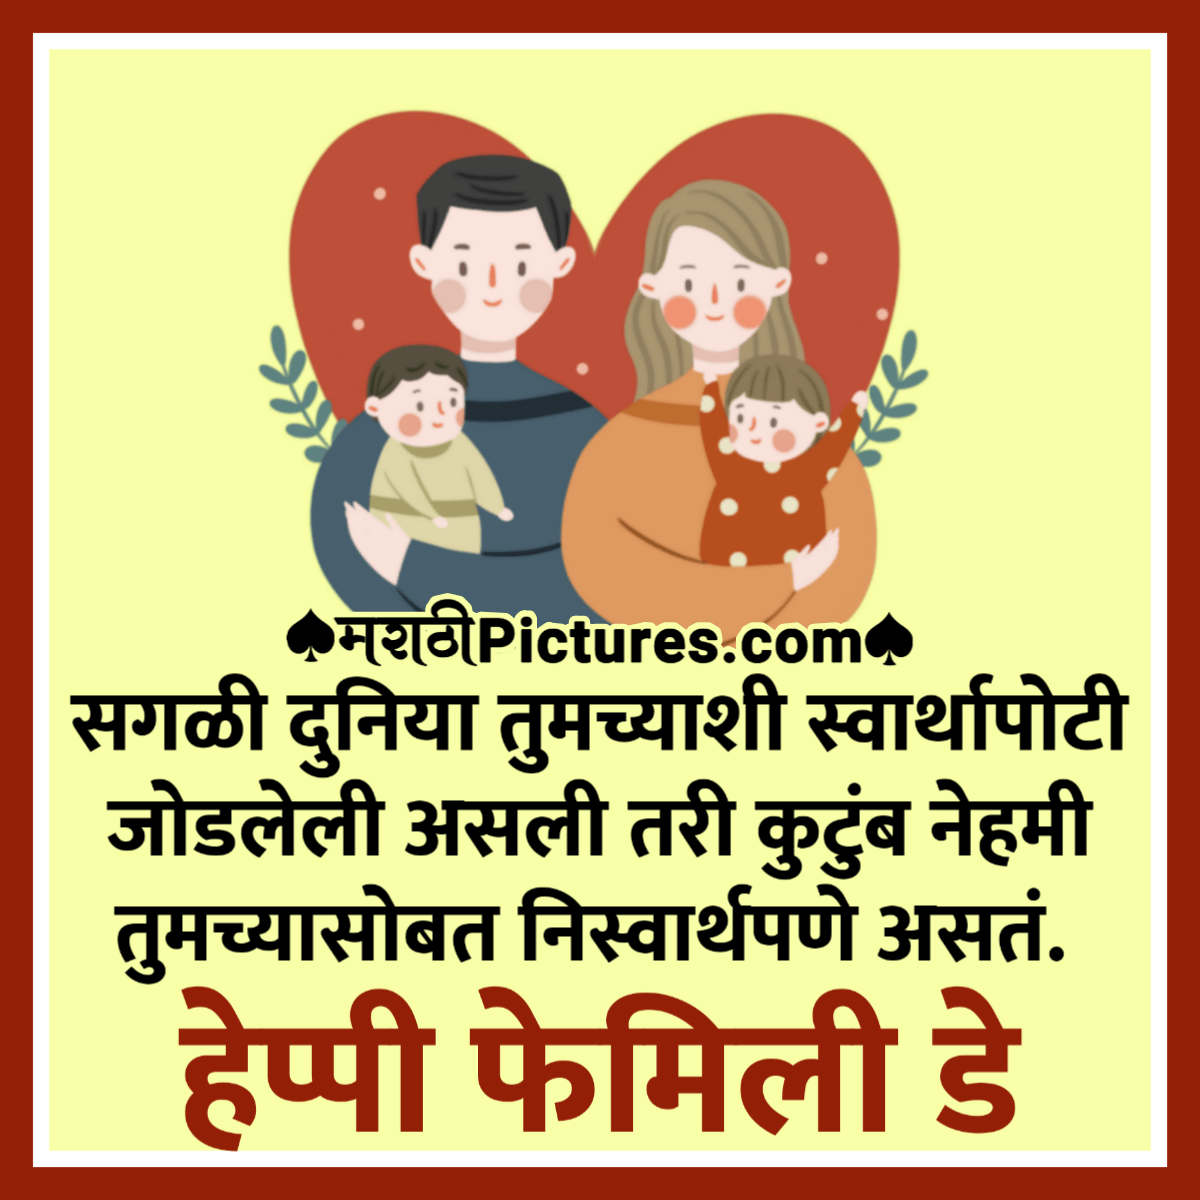 Happy Family Day Marathi Quote